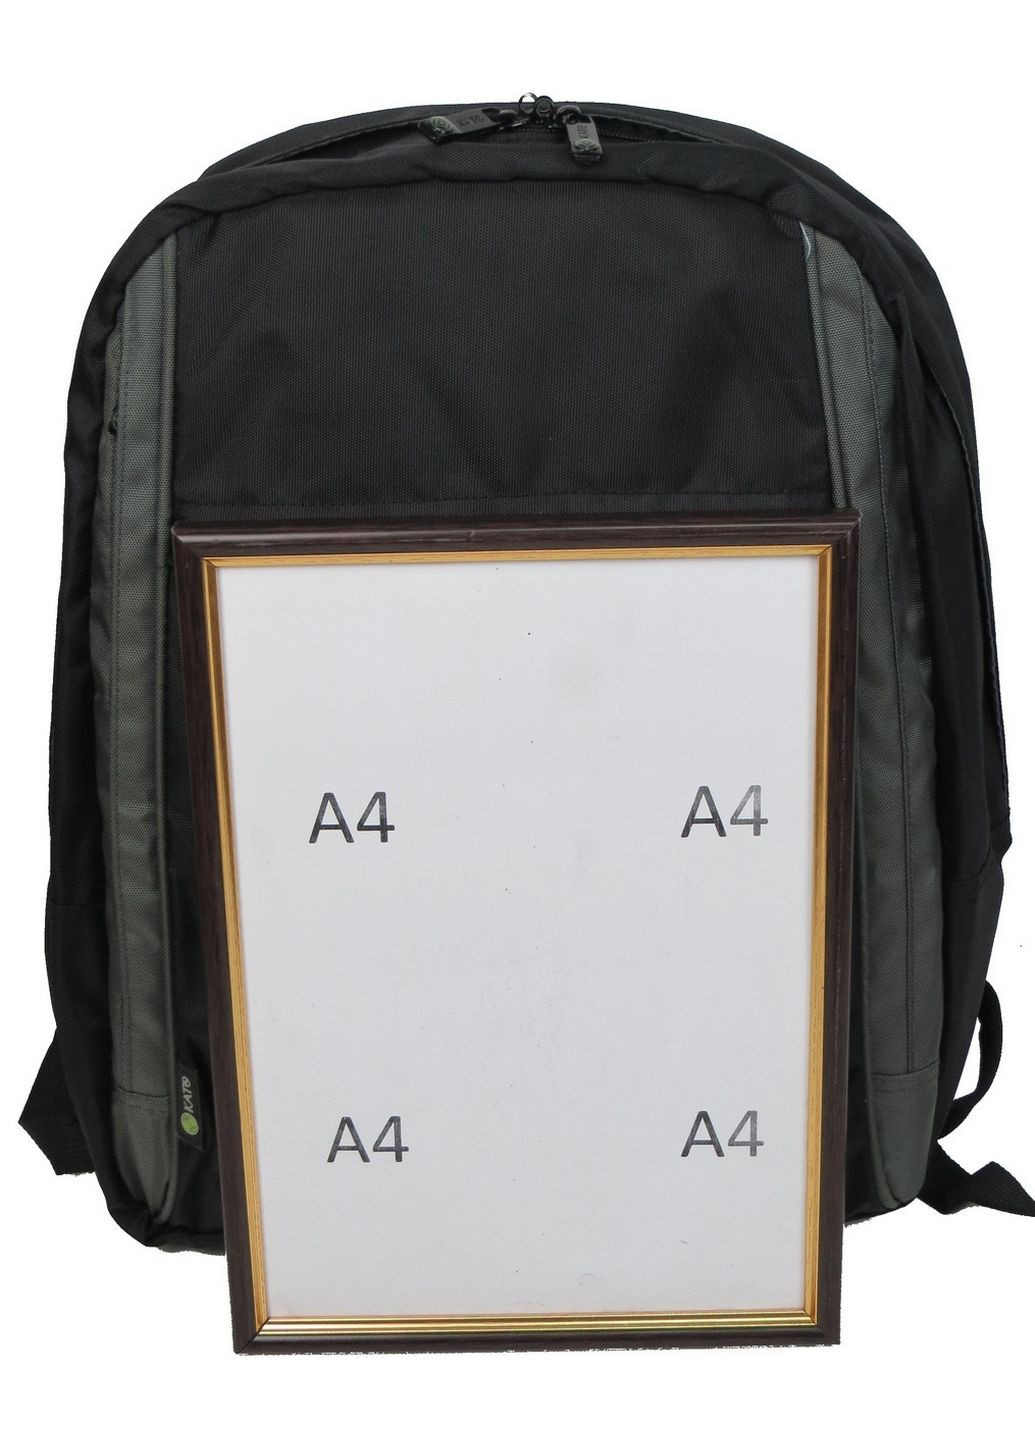 Компактный рюкзак с отделом для ноутбука 15,6 дюймов No Brand (282581641)